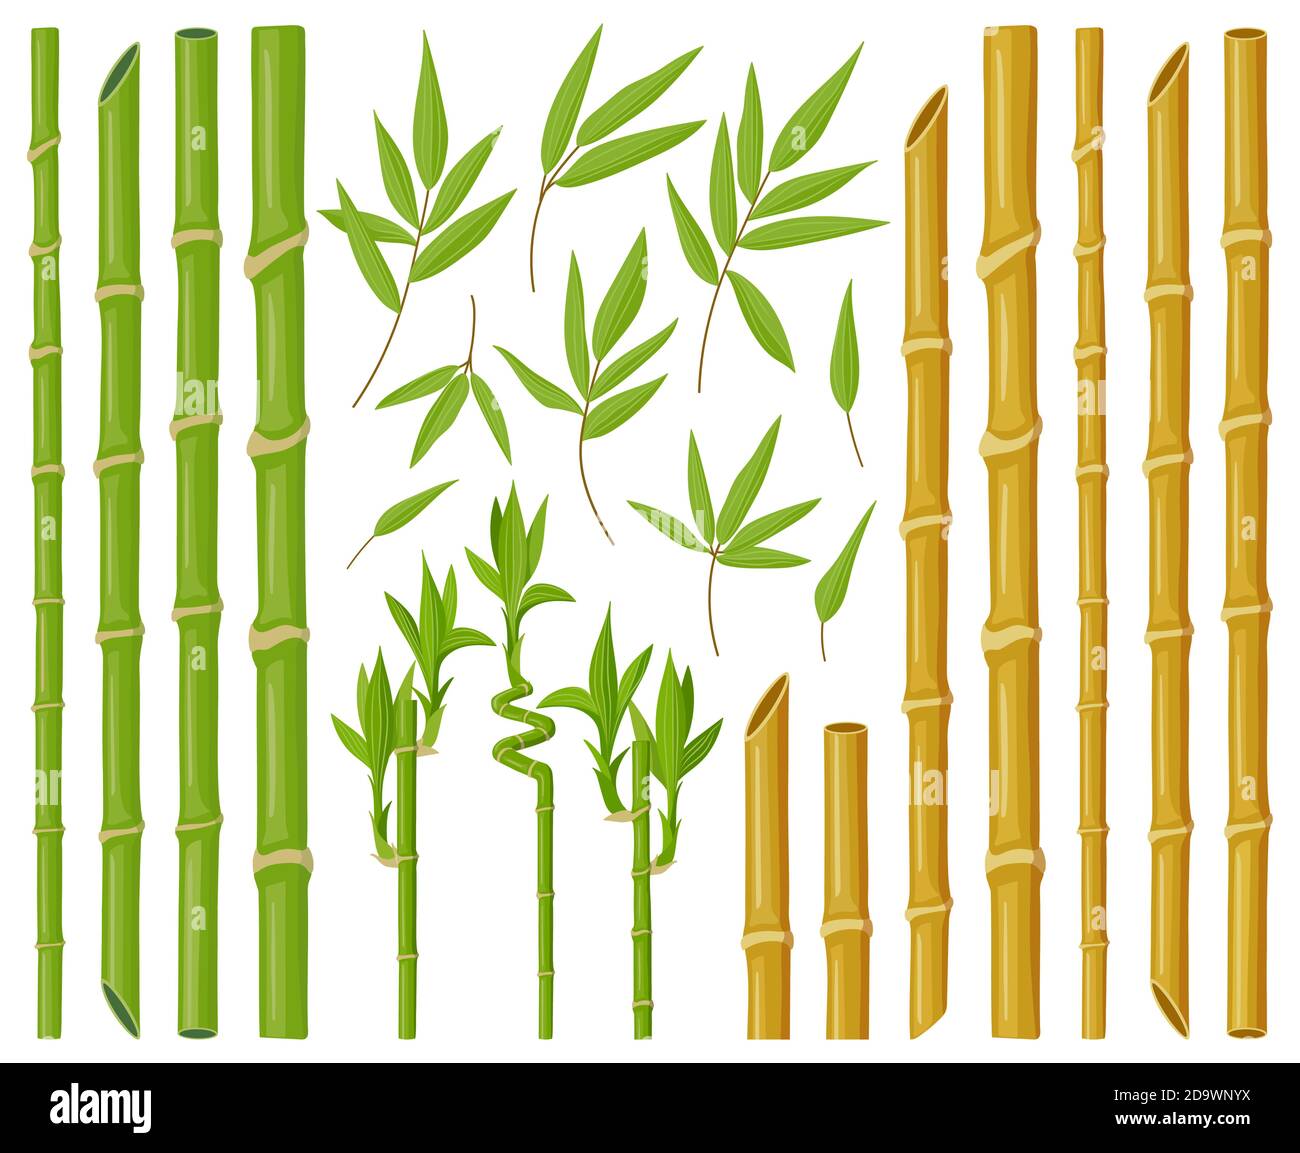 Cartoon Bambuspflanzen. Asiatische Bambusstämme, Stiele und Blätter, frische grüne Stick Pflanzen mit Laub, natürliche Bambus-Pflanze Vektor-Illustration-Set Stock Vektor